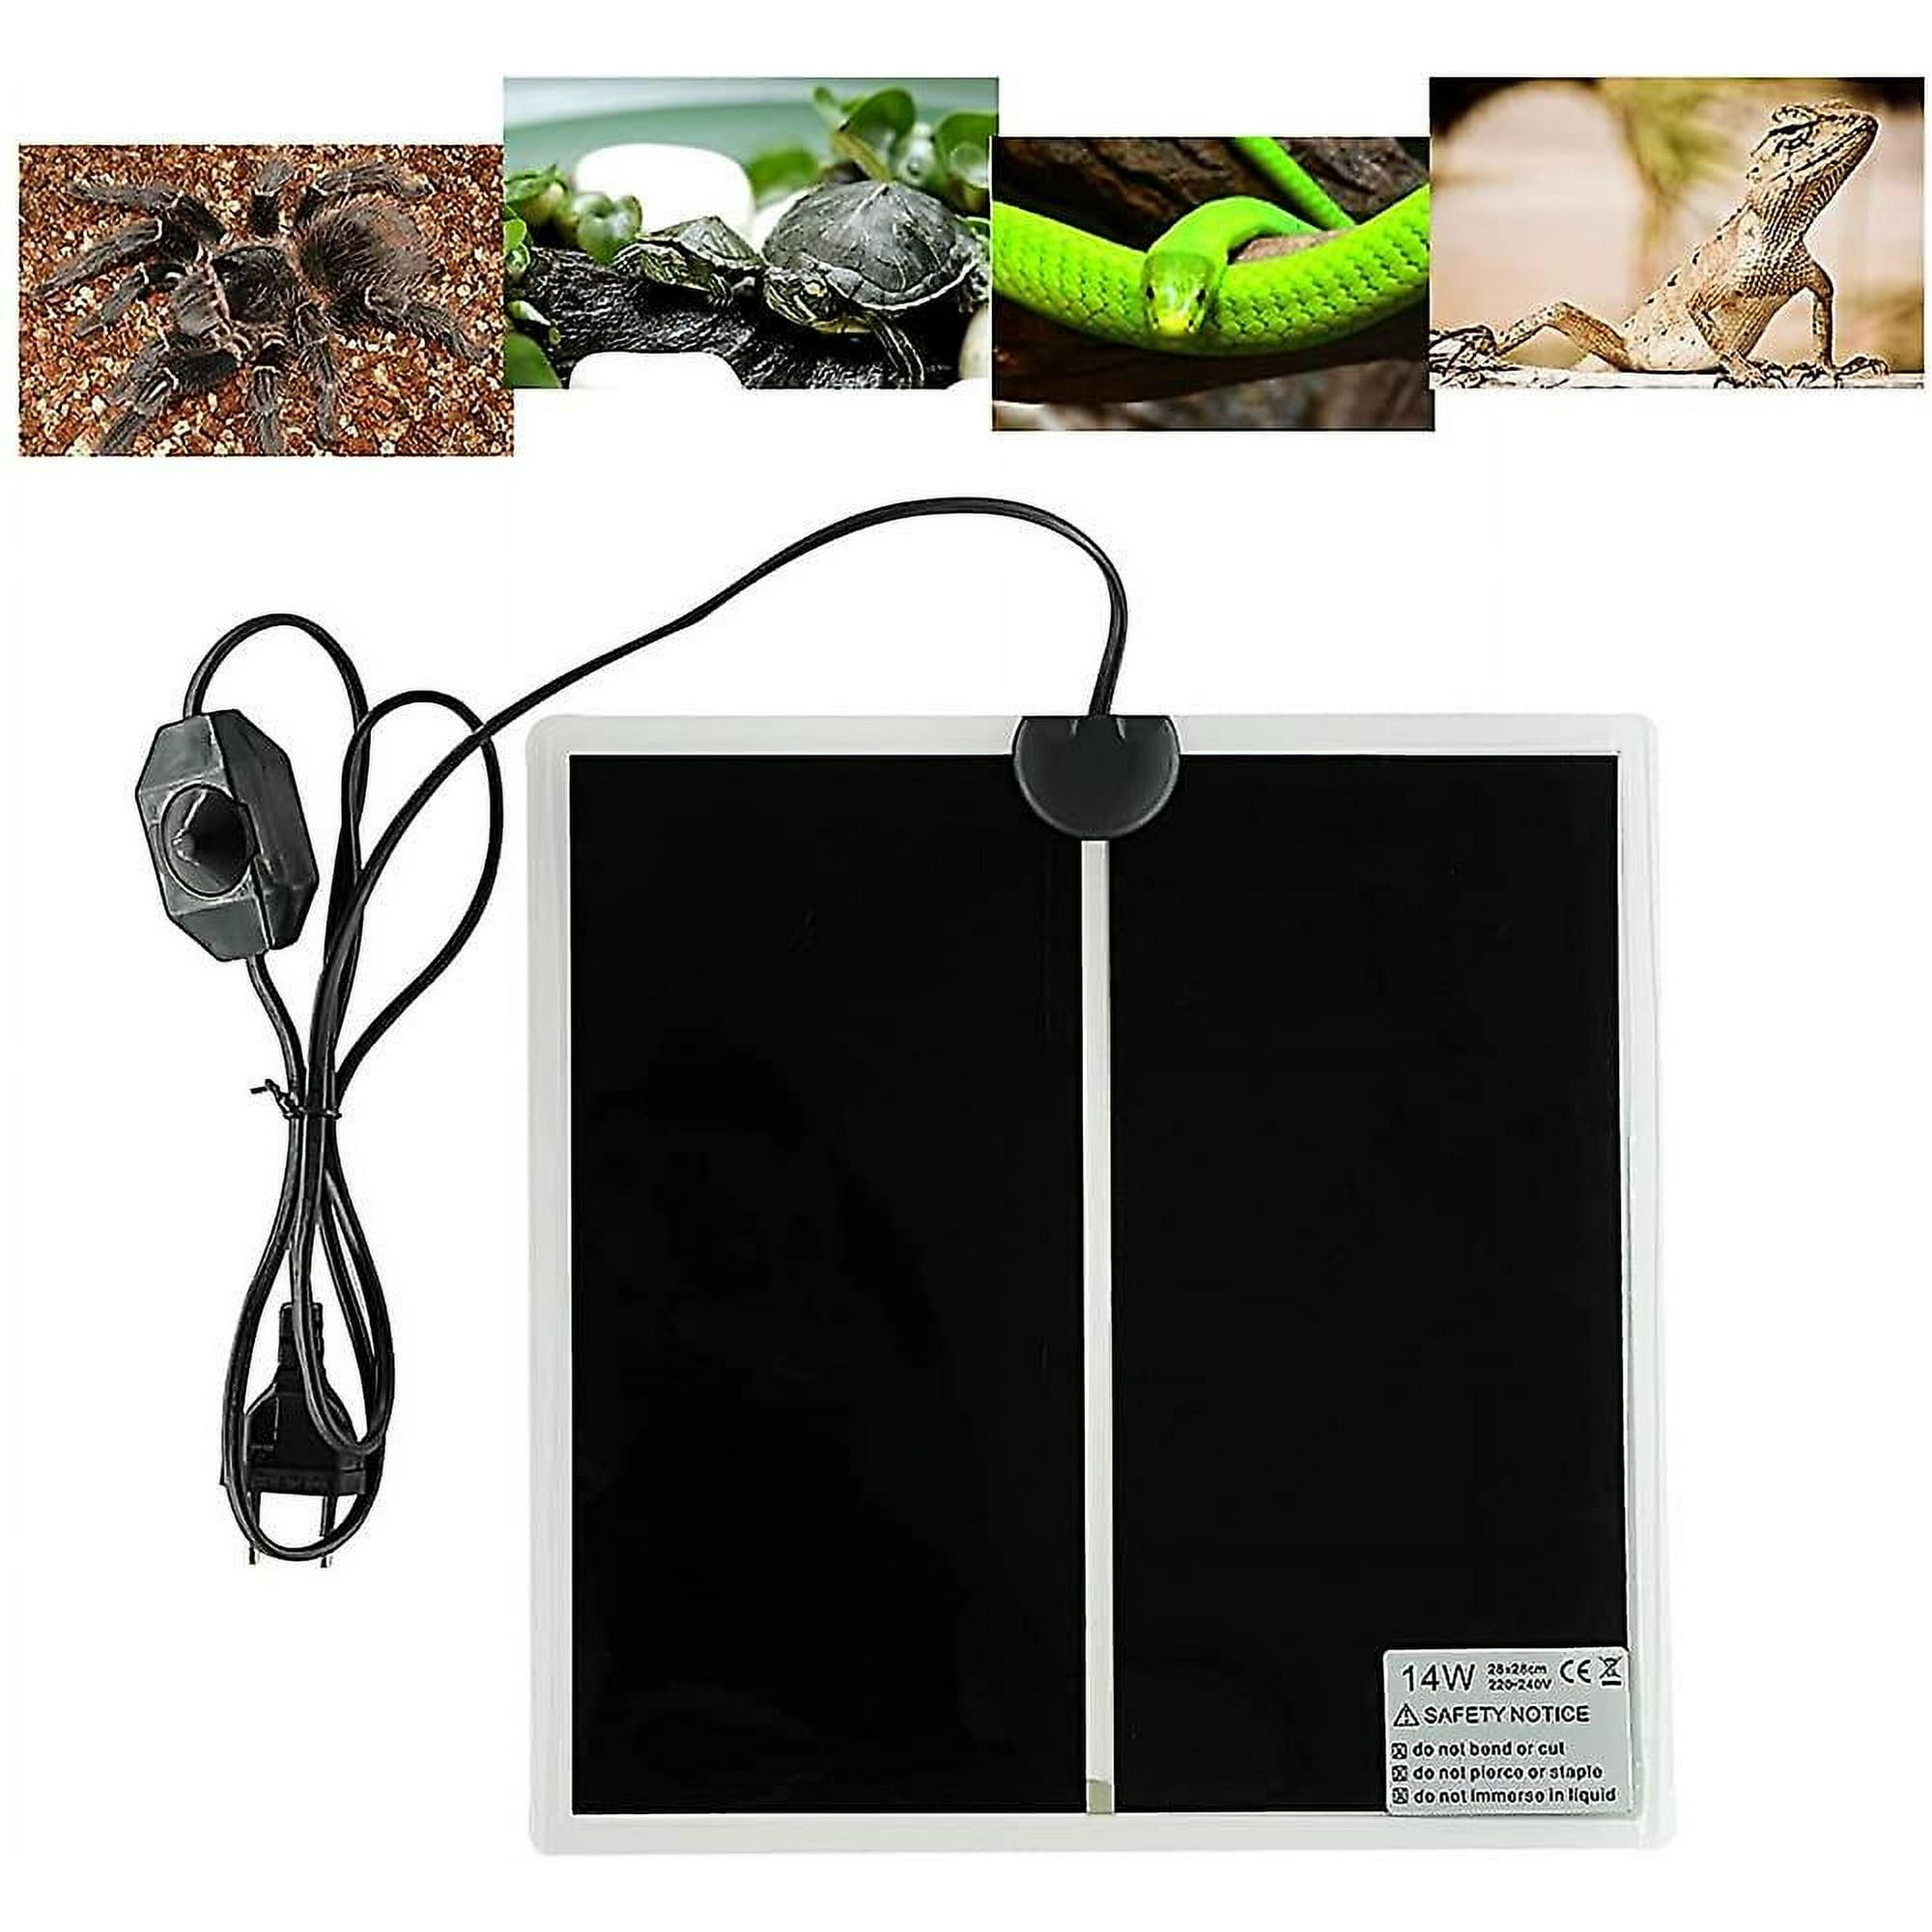 Comprar Manta eléctrica impermeable para reptiles, estera